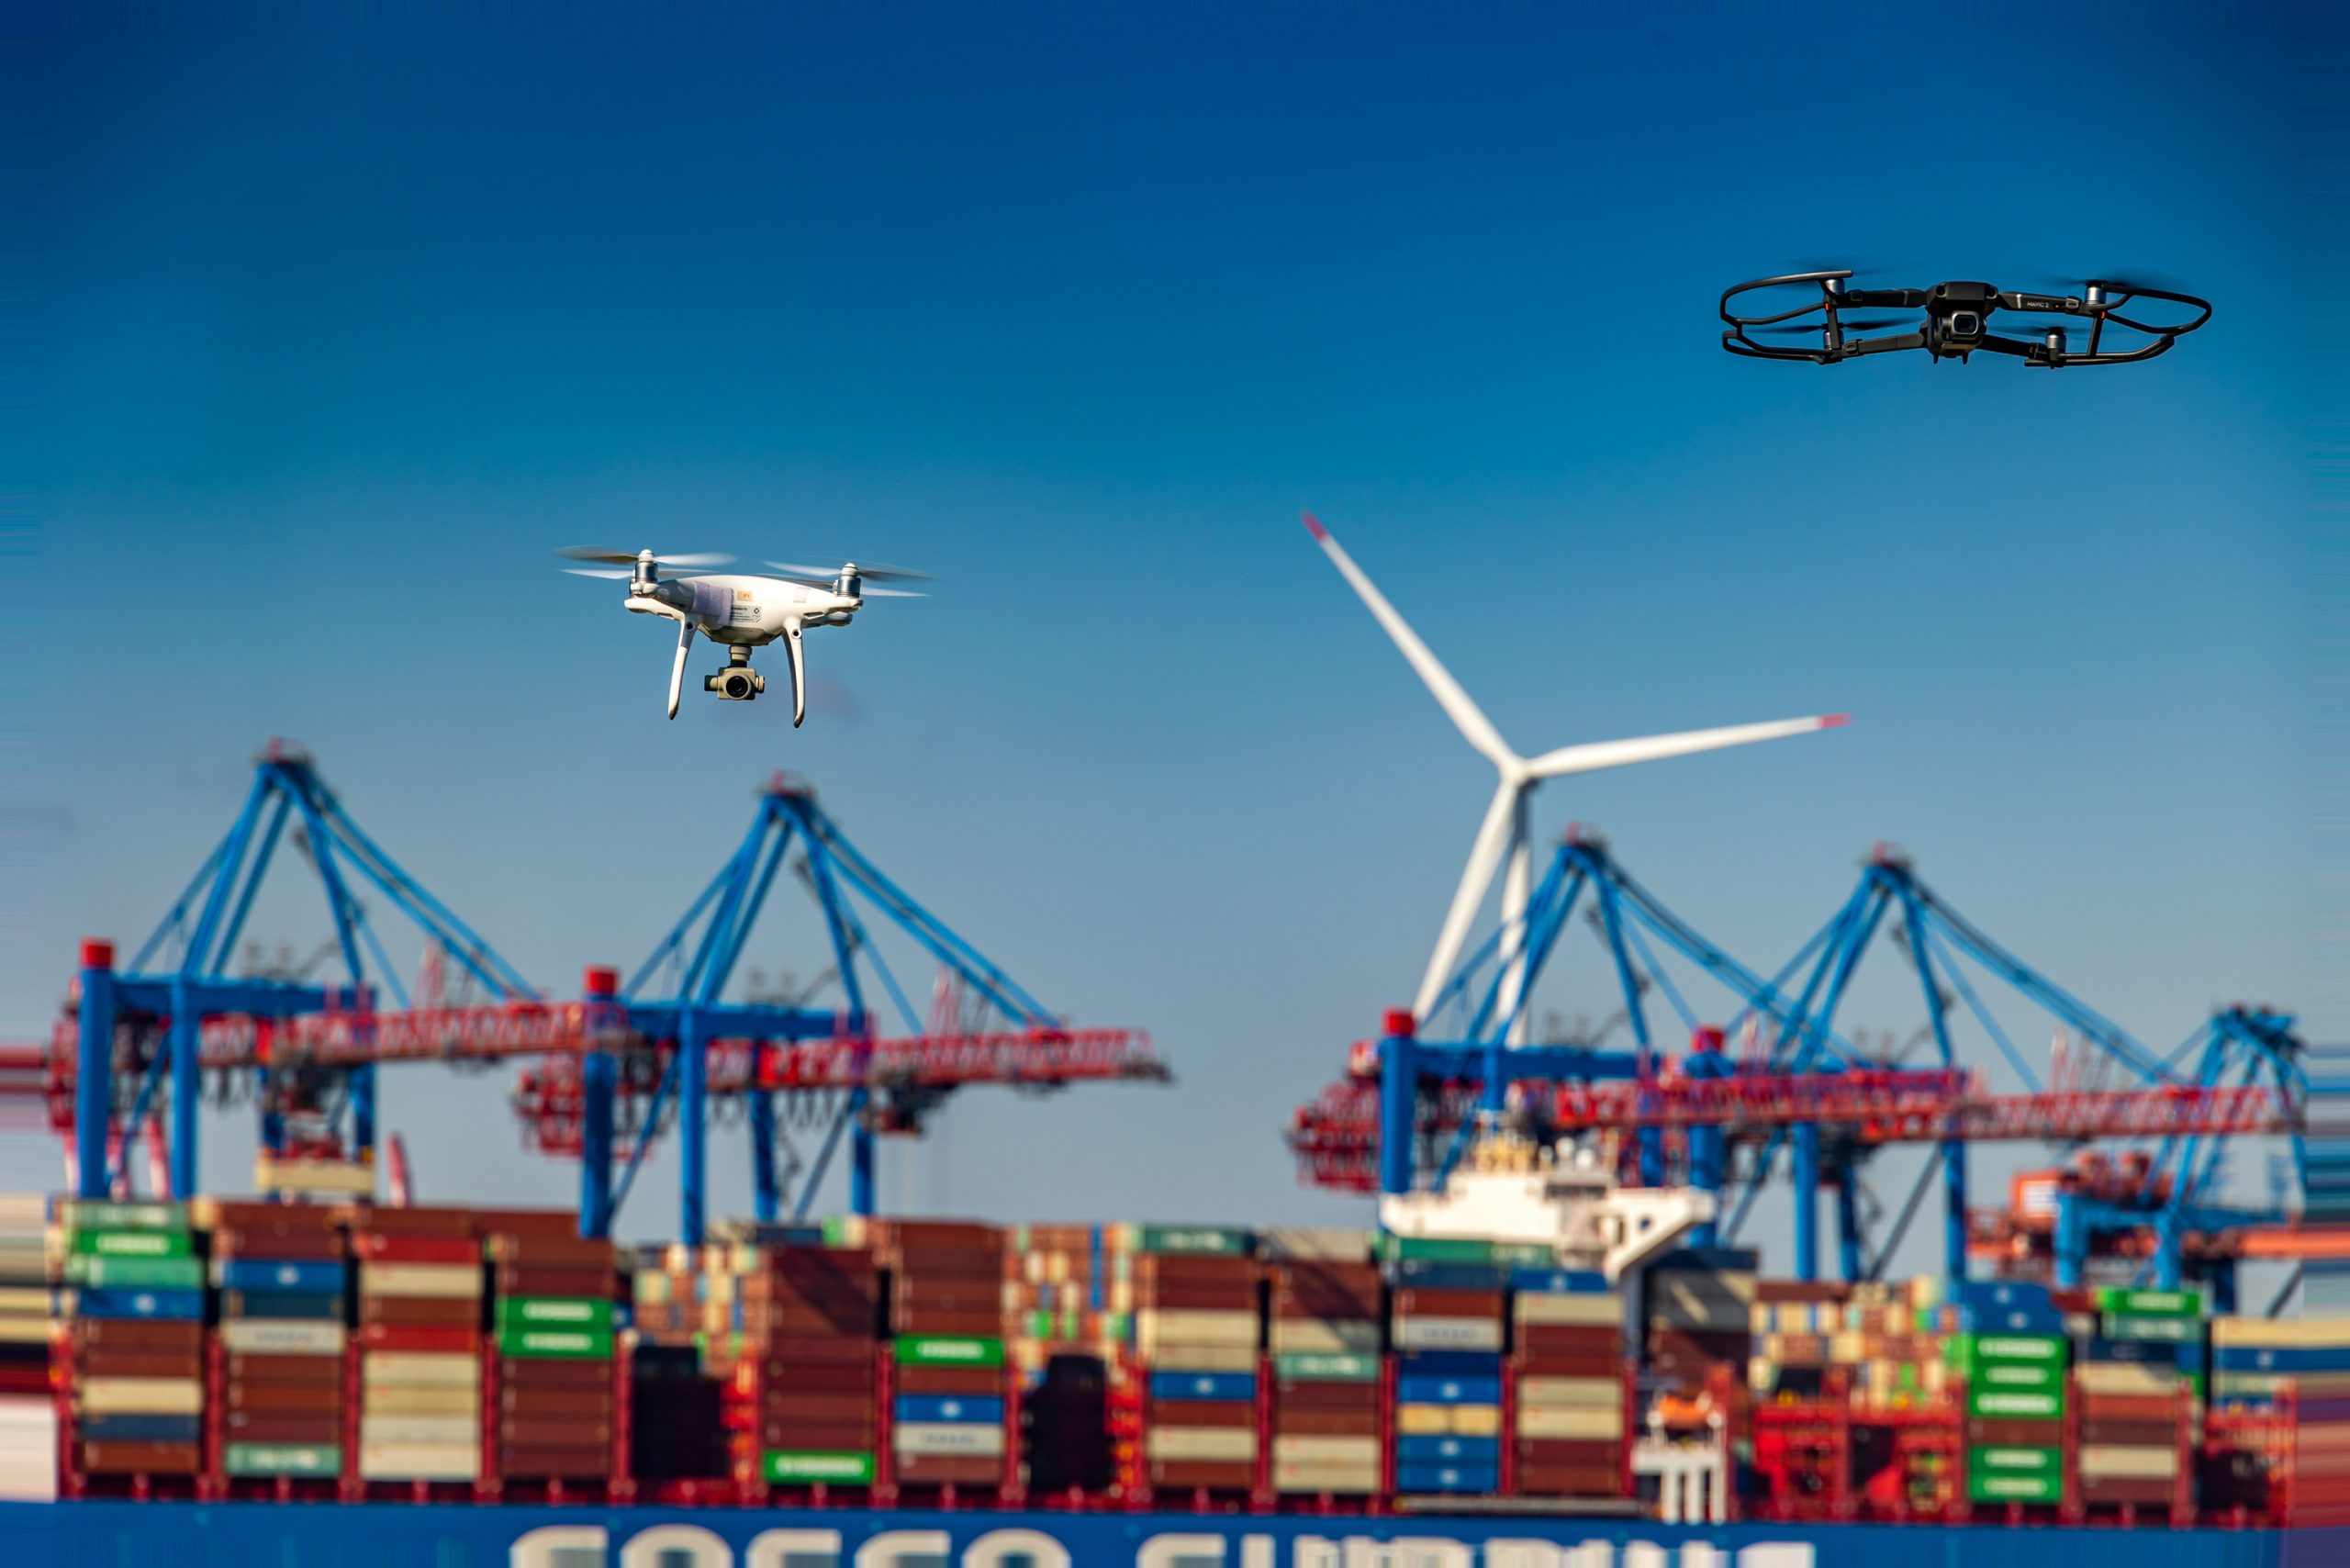 Das Testlabor in Hamburg soll untersuchen, wie Drohnen im regulären Flugraum integriert werden können.